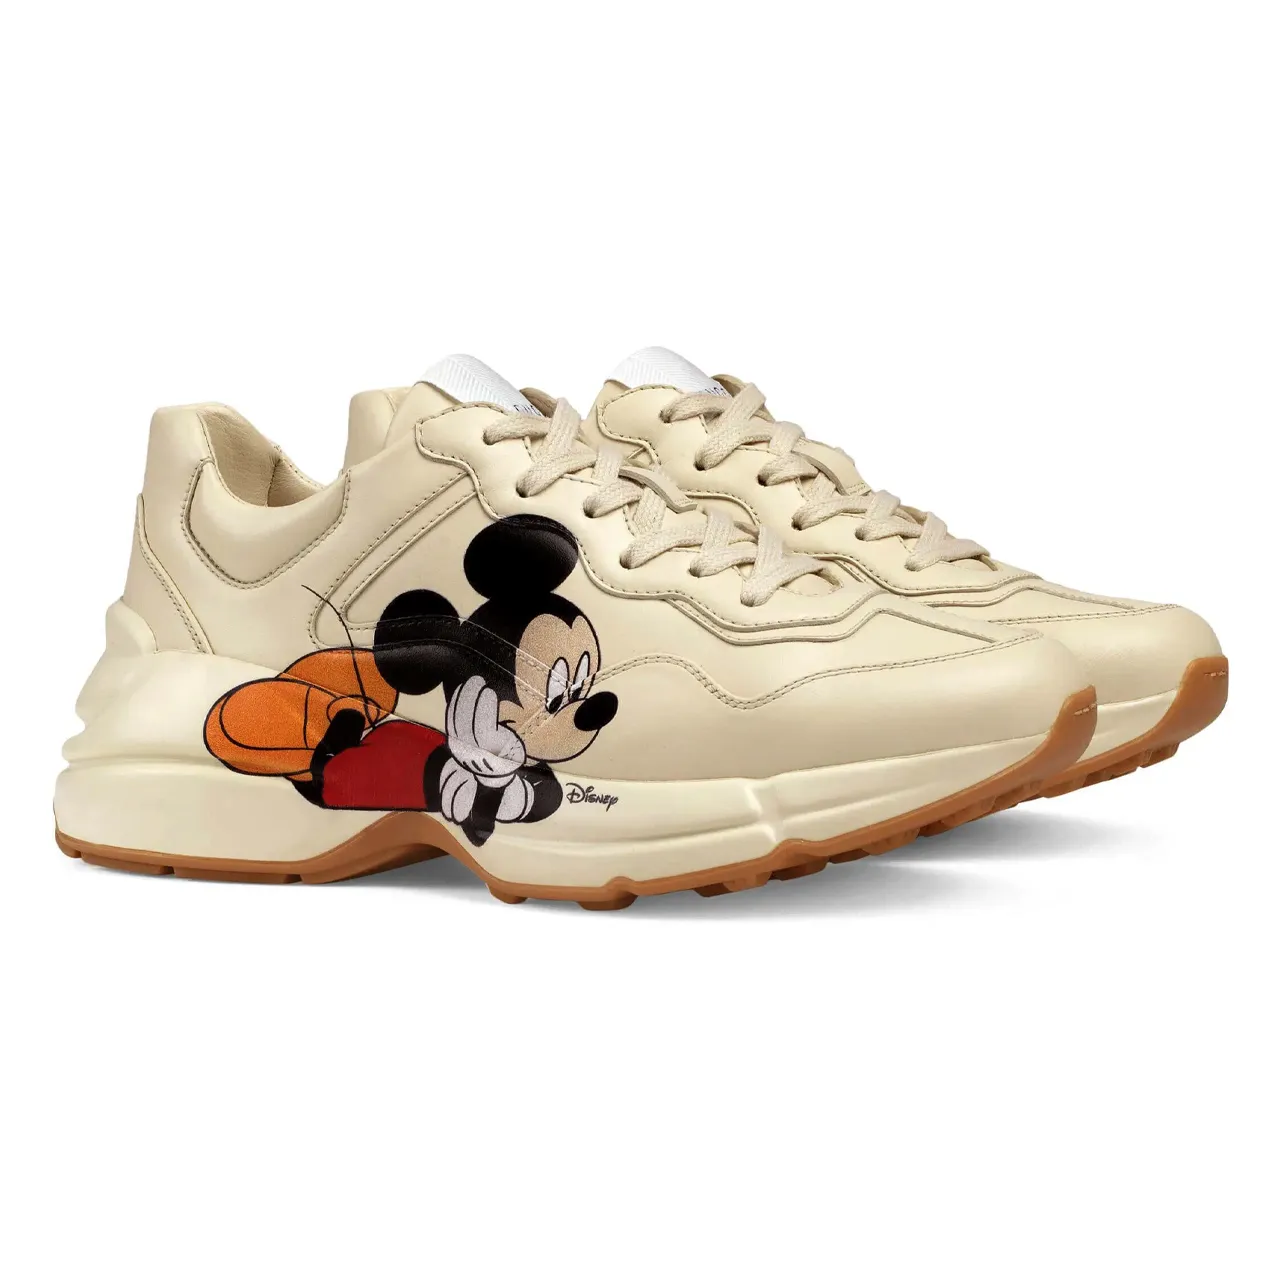 Disney x Gucci Rhyton 'Mickey Mouse'